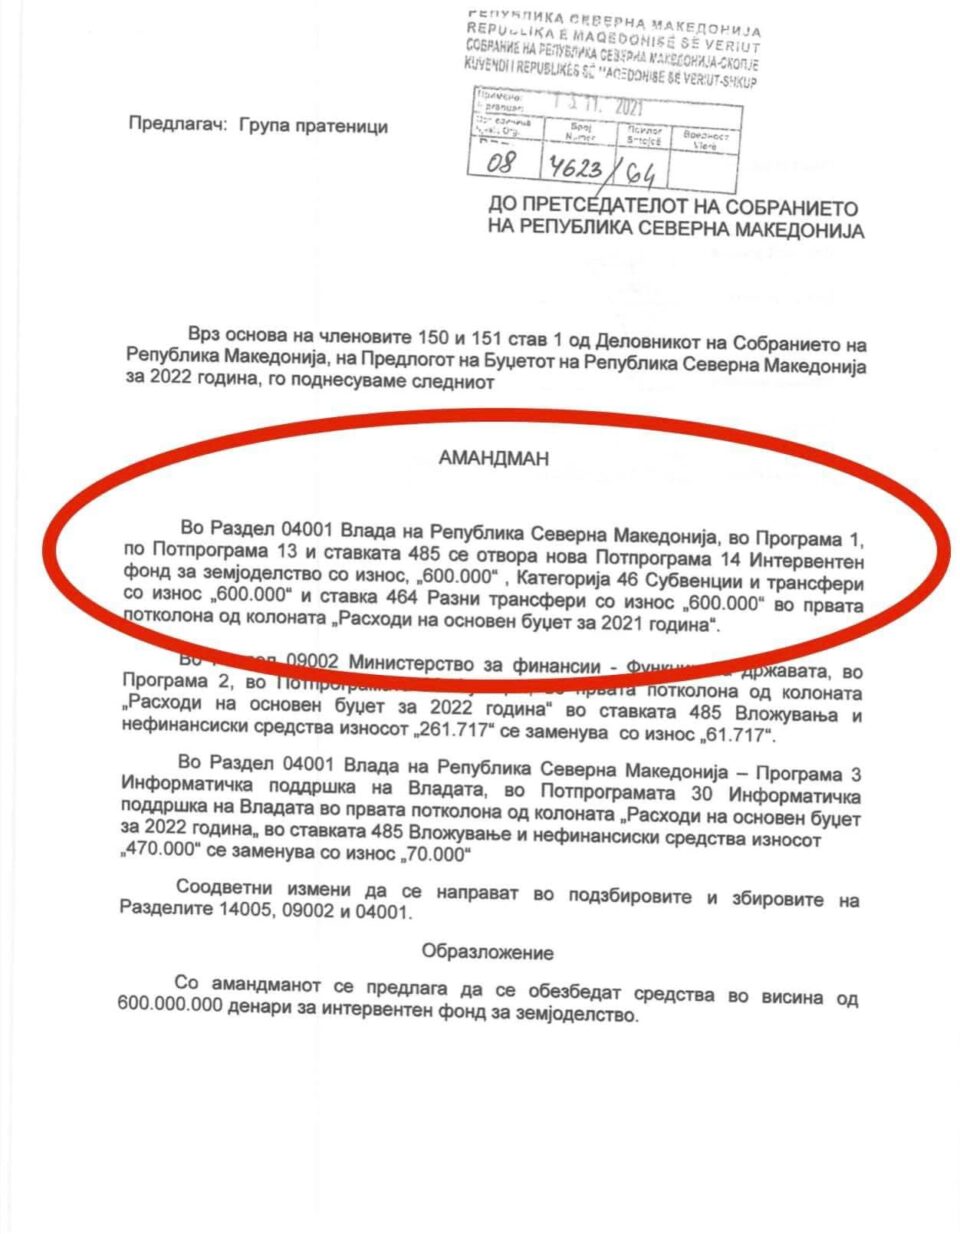 Трипуновски: Интервентен фонд ќе немаше ако не беа пратениците од ВМРО-ДПМНЕ!